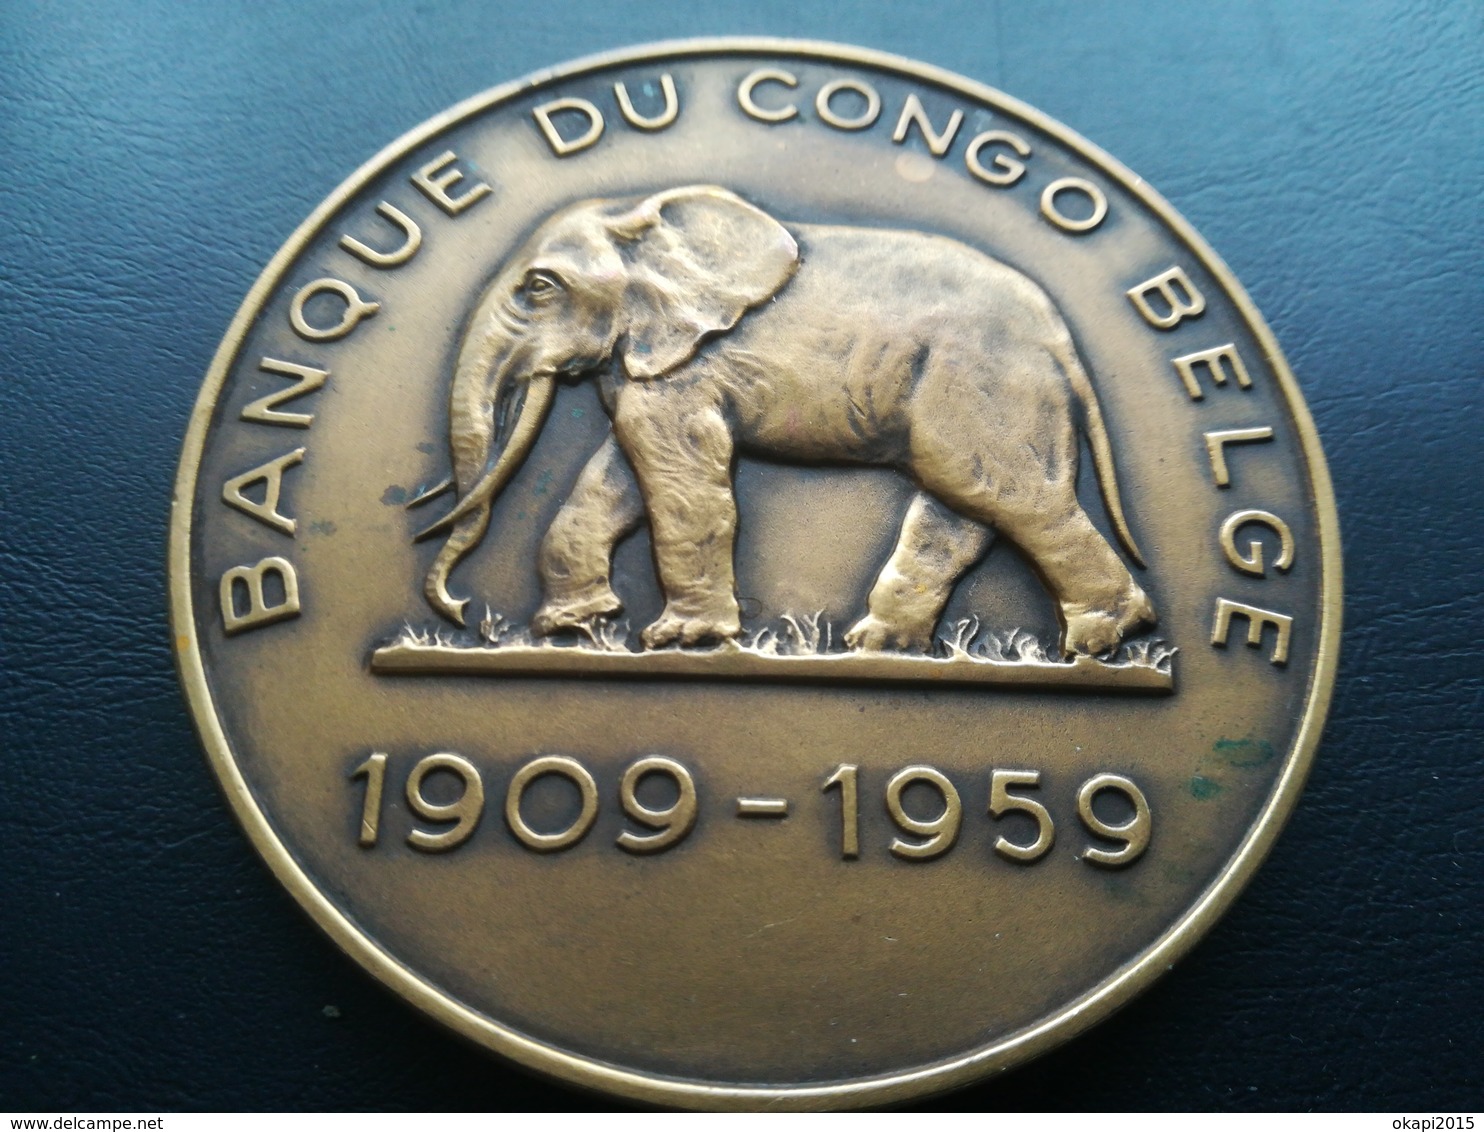 BANQUE CONGO BELGE MÉDAILLE COMMÉMORATIVE  ANNÉE 1959 MATADI LÉOPOLDVILLE COLONIE BELGIQUE